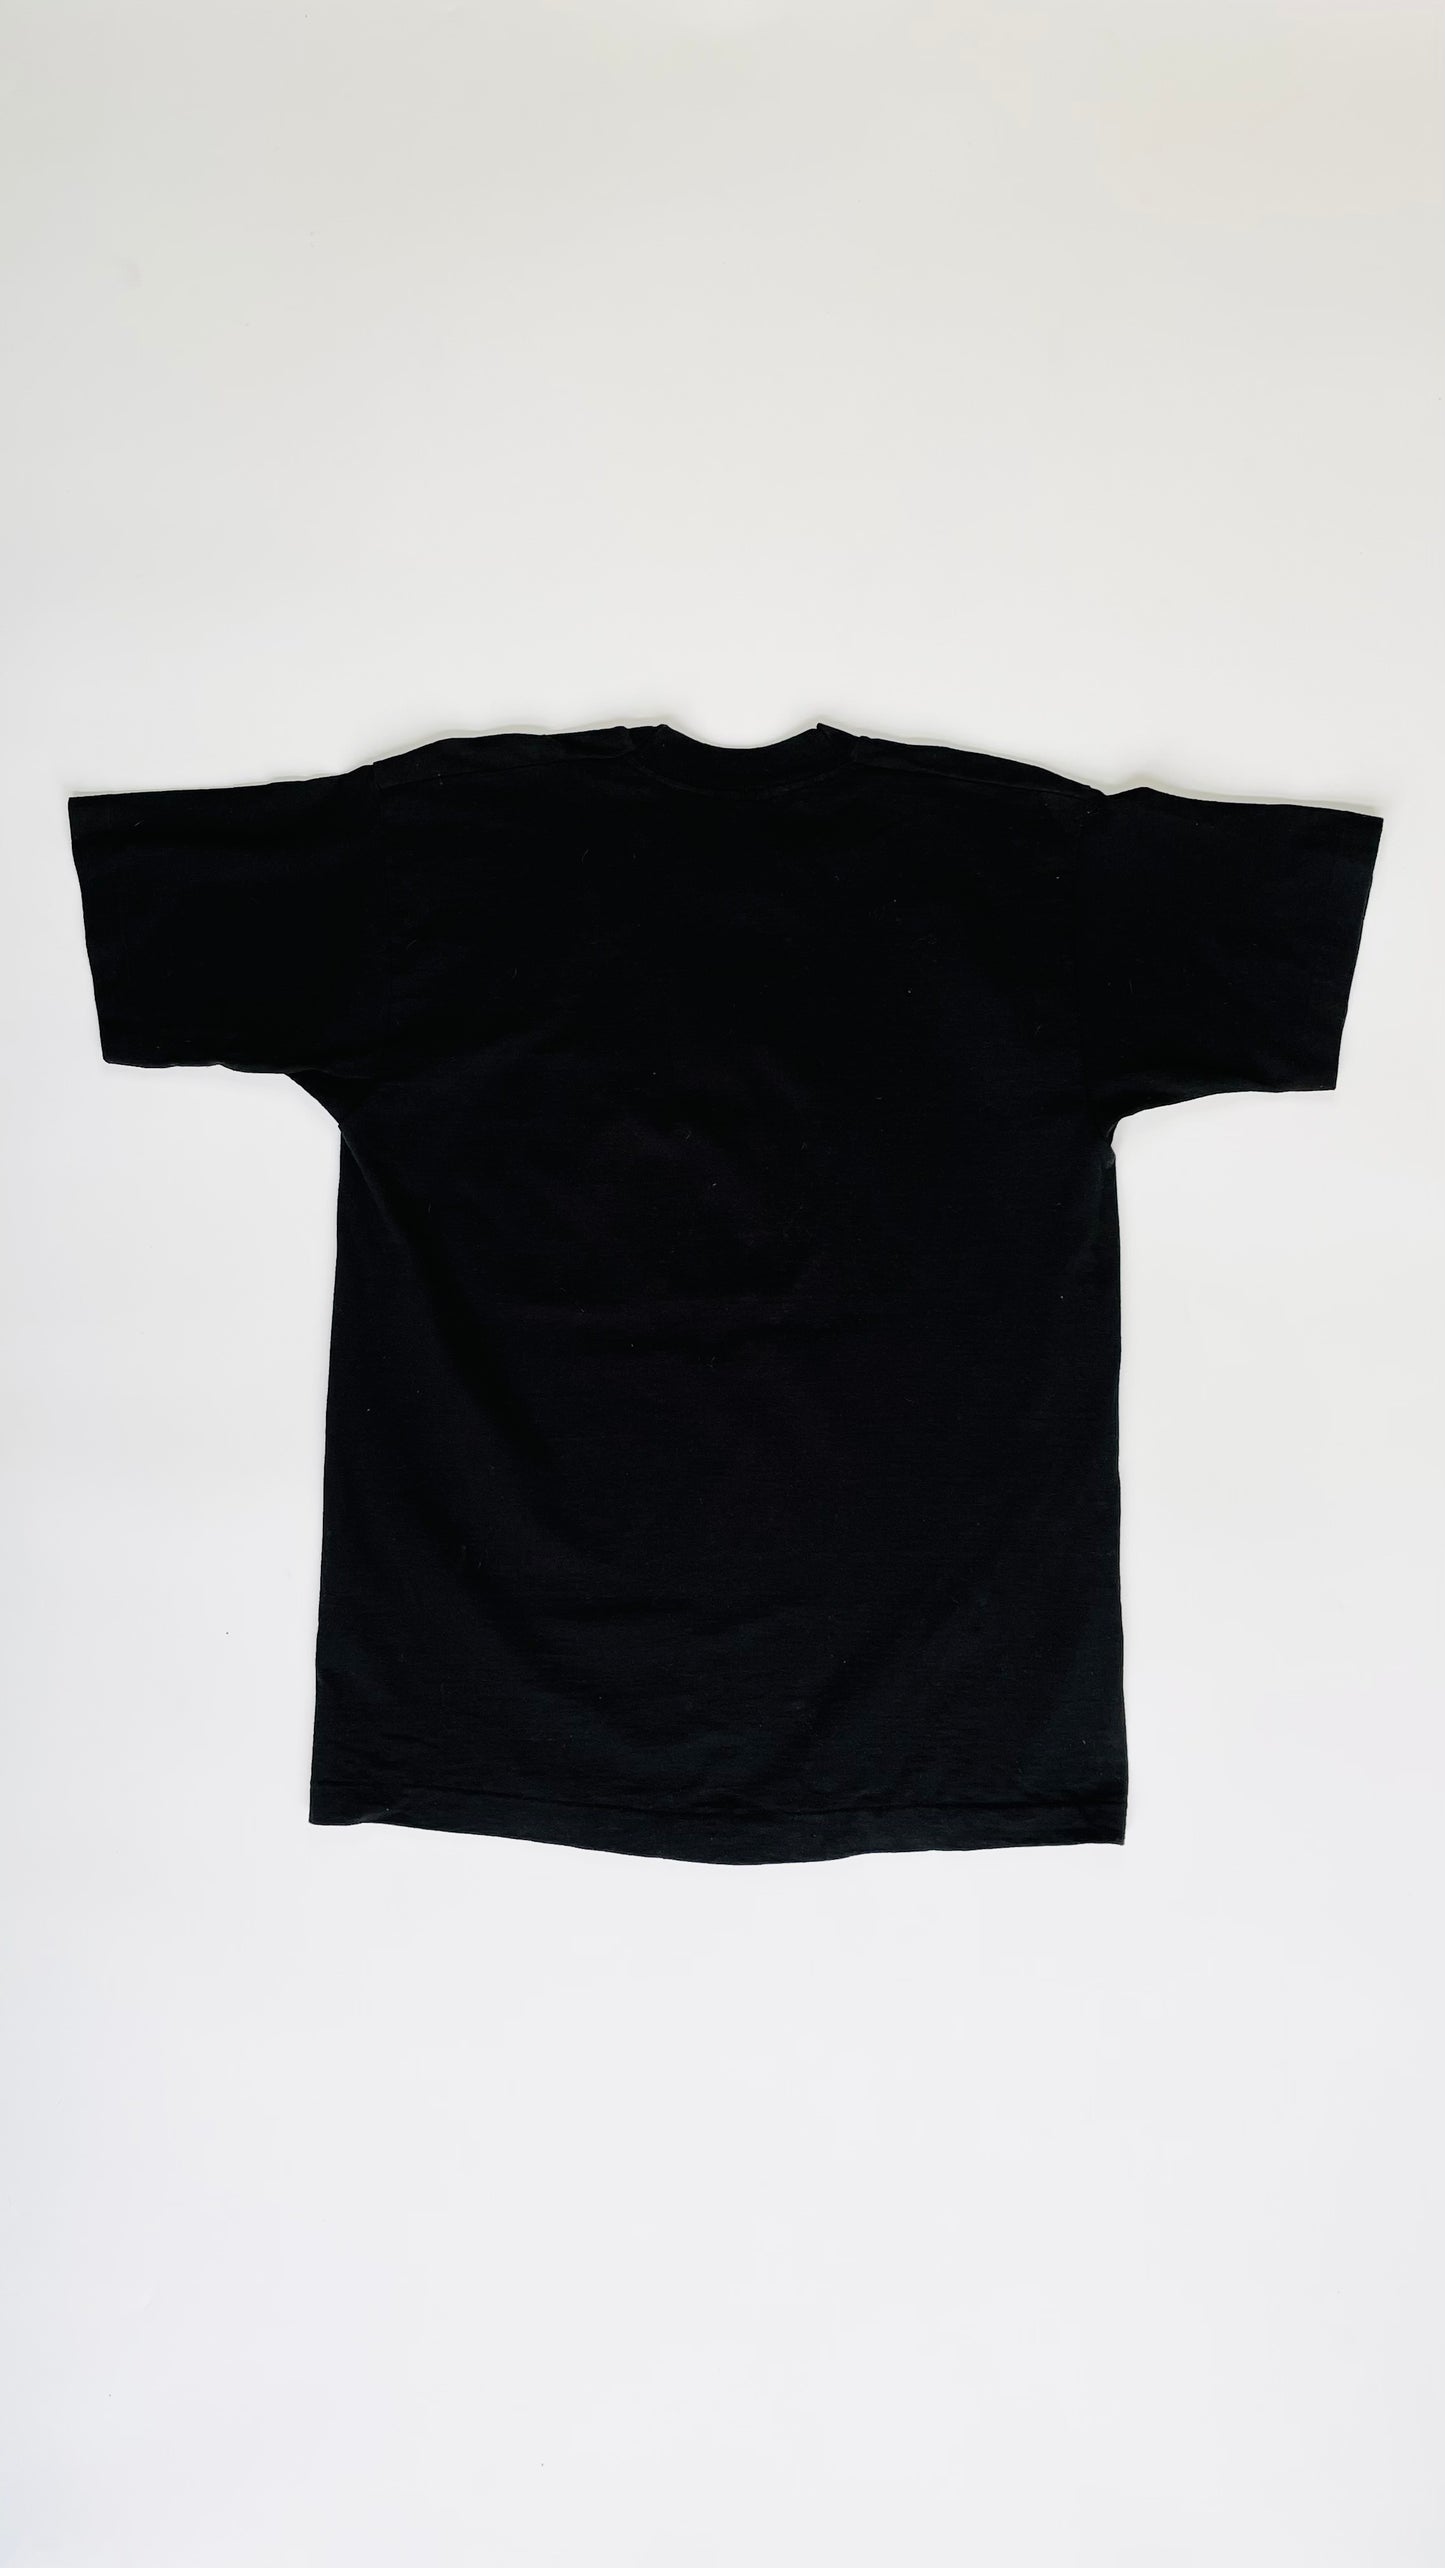 90s Black Memphis blues musician t-shirt  - Size L